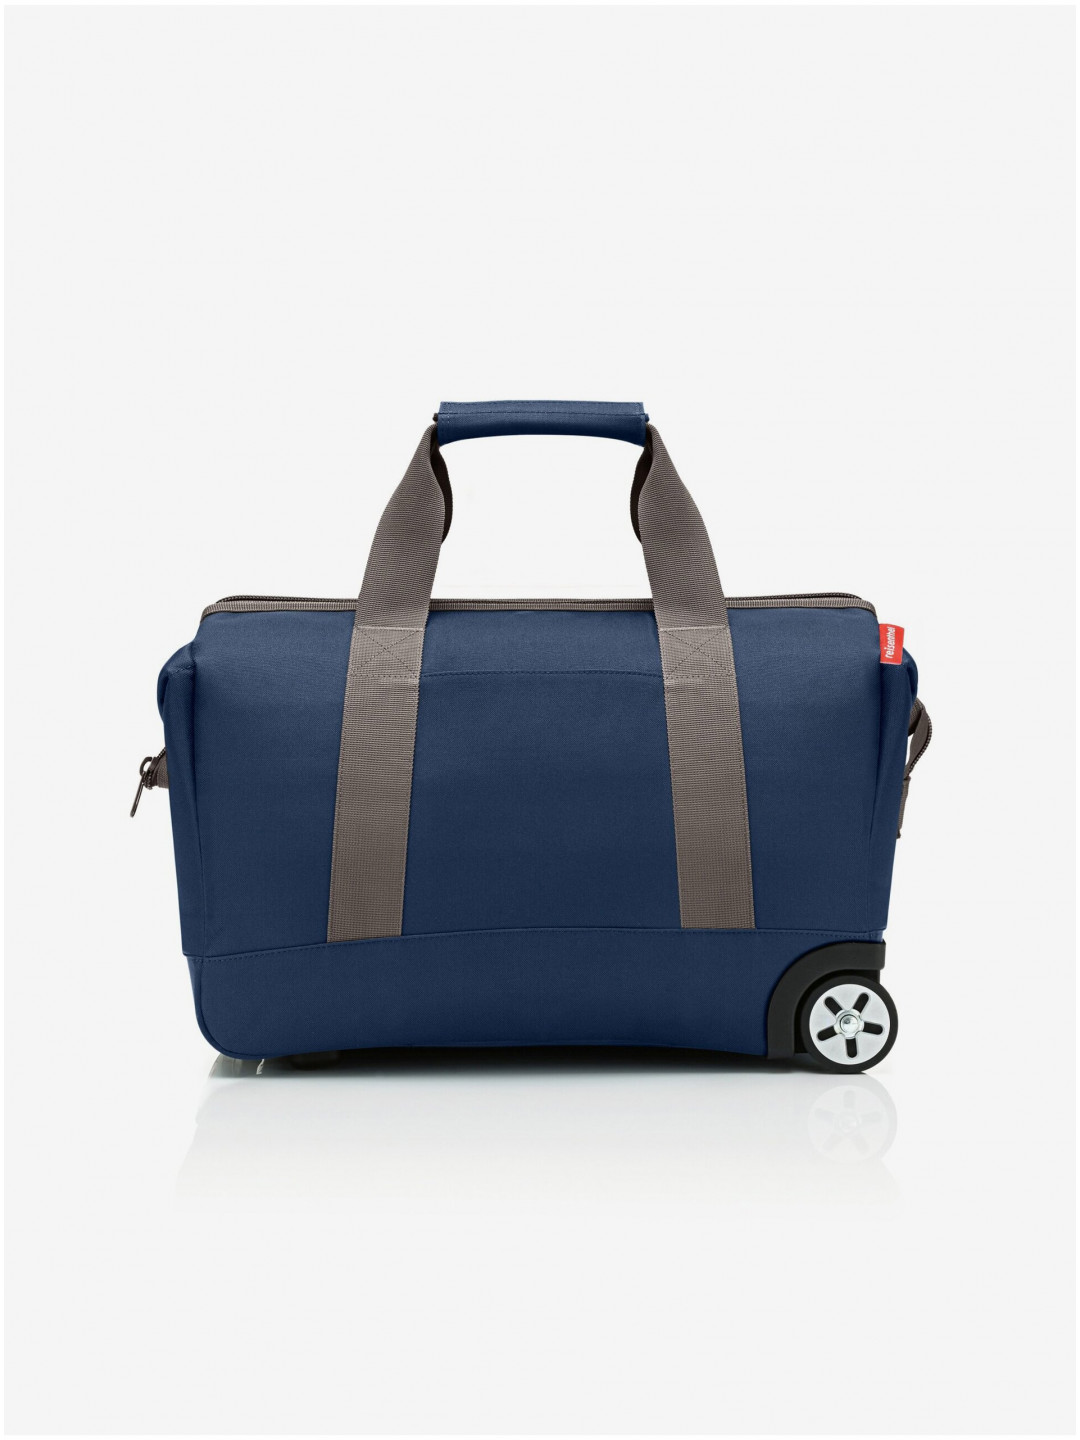 Tmavě modrá cestovní taška na kolečkách Reisenthel Allrounder Trolley